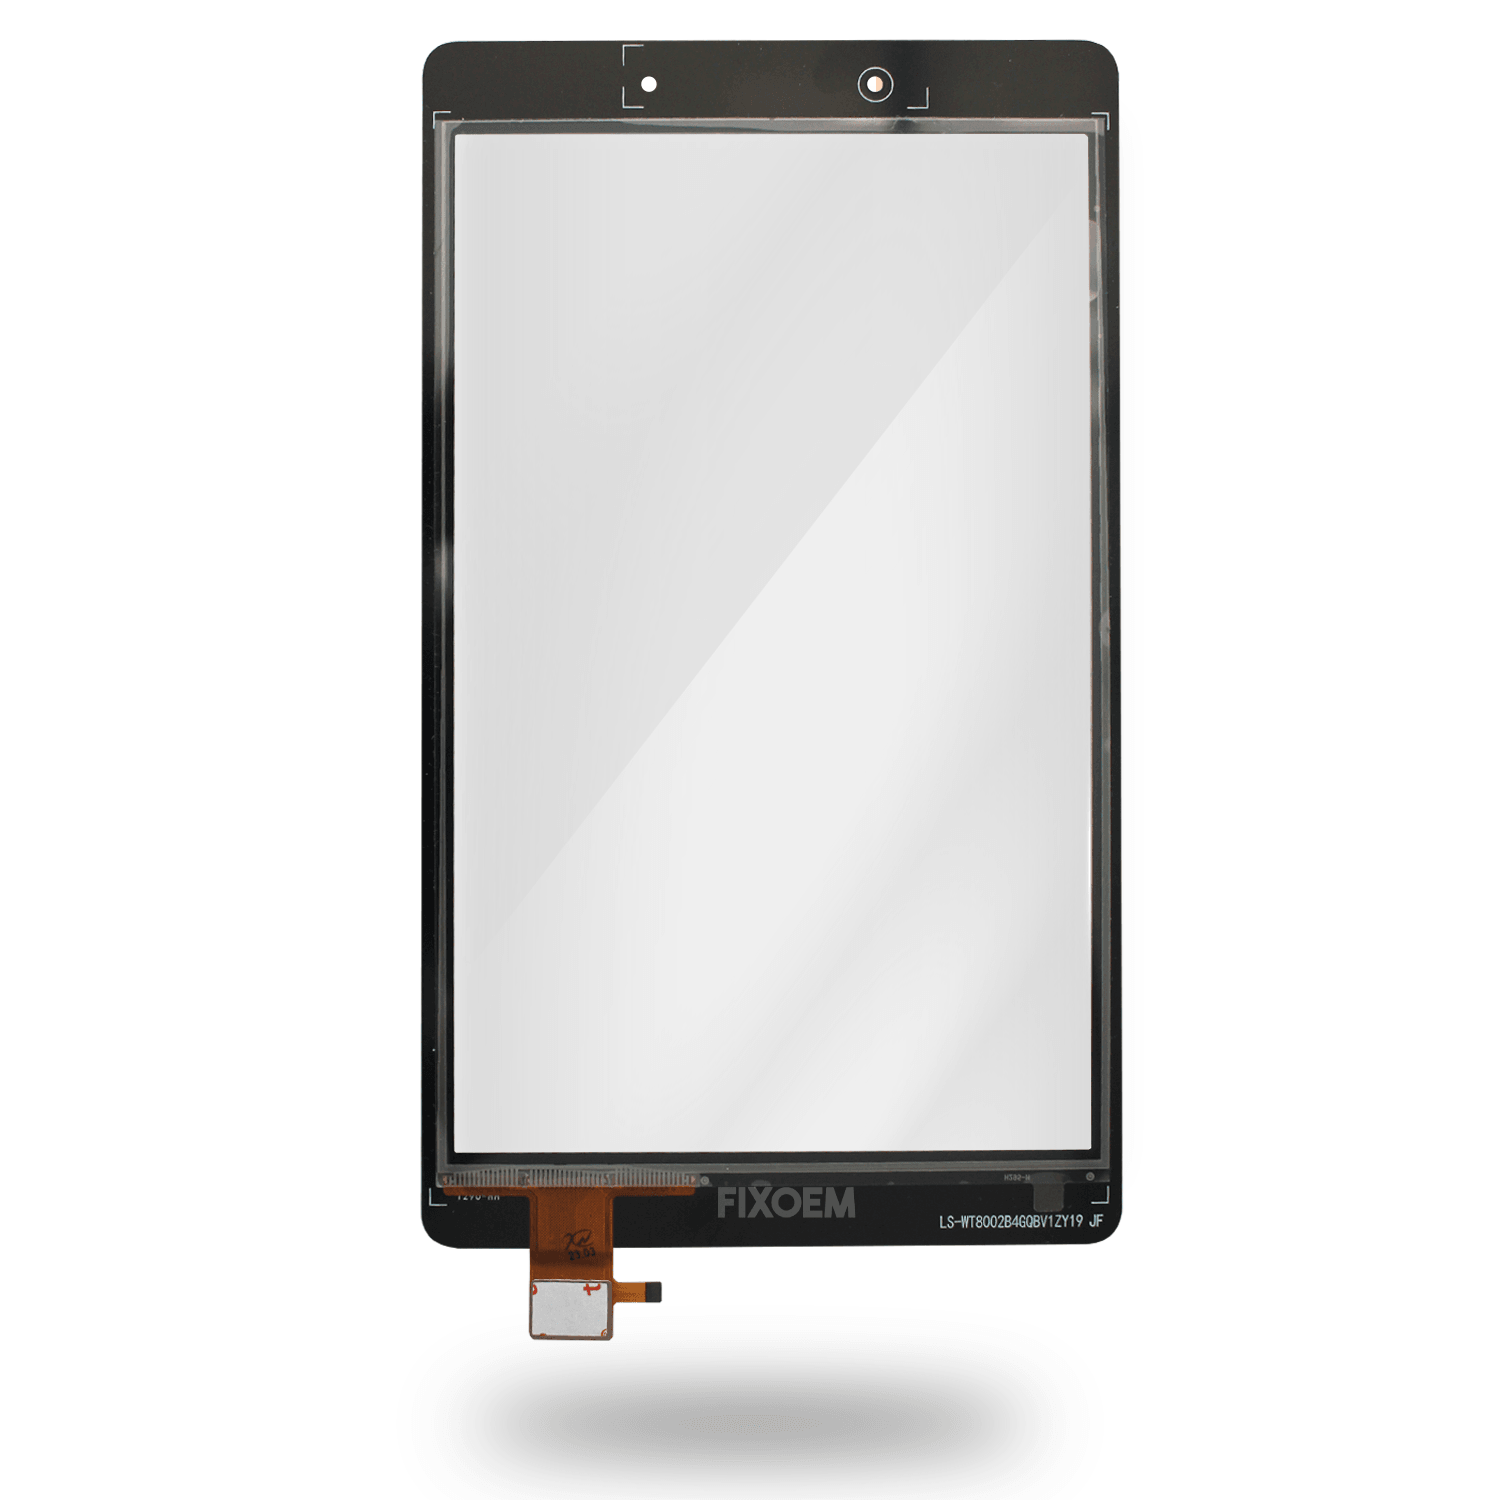 Touch Para Samsung Galaxy Tab A 2019 Sm-T290 a solo $ 110.00 Refaccion y puestos celulares, refurbish y microelectronica.- FixOEM